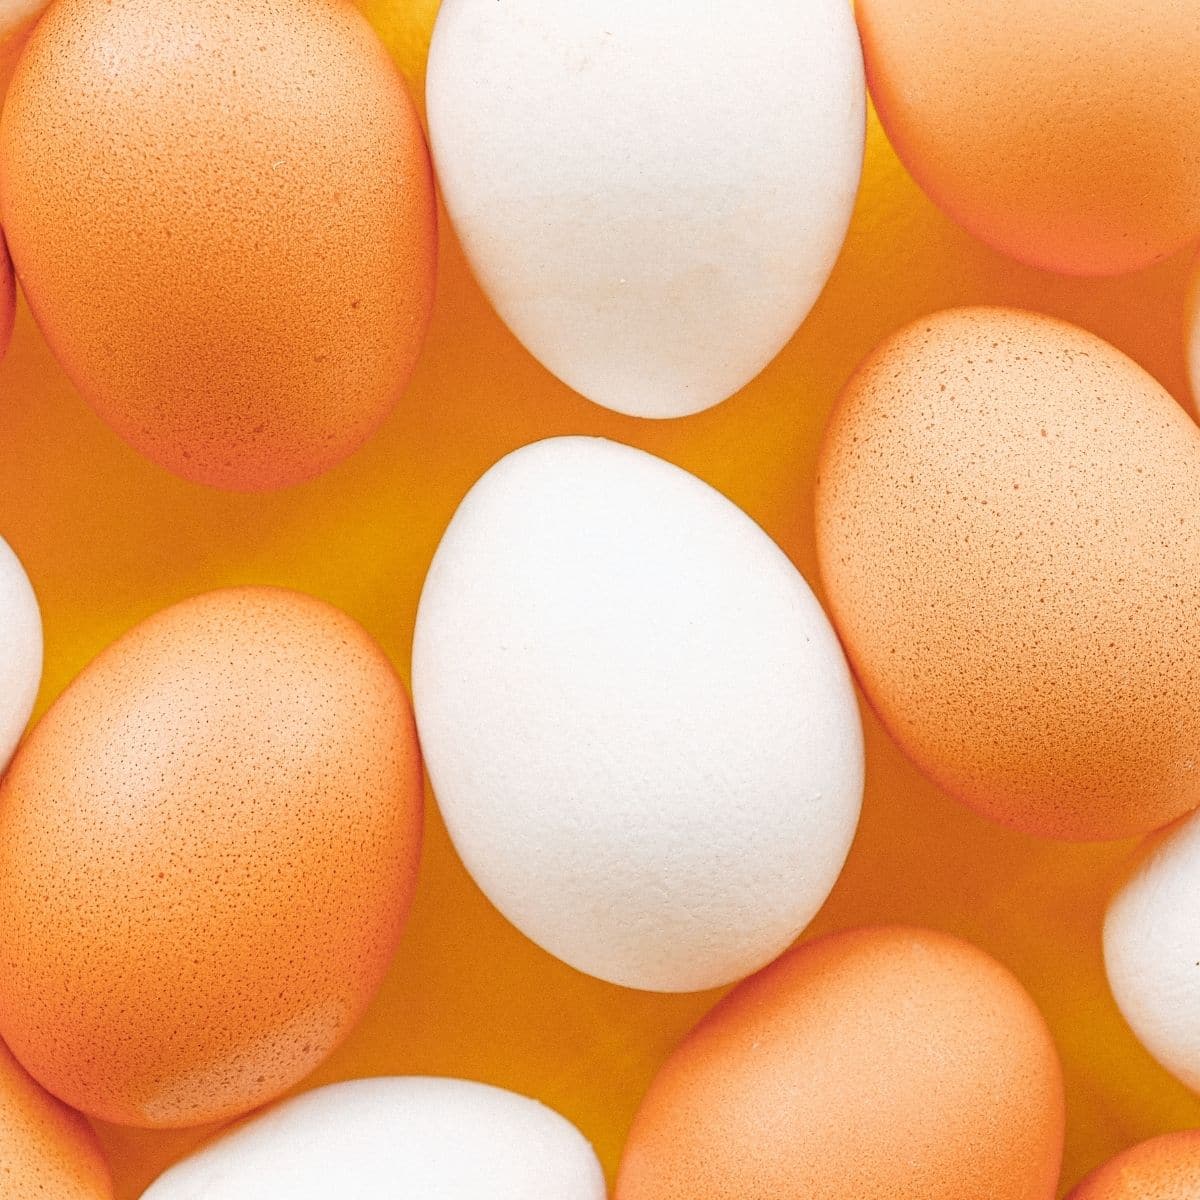 Çeşitli bütün kahverengi ve beyaz yumurtaların en iyi eqq ikame kare görüntüsü.